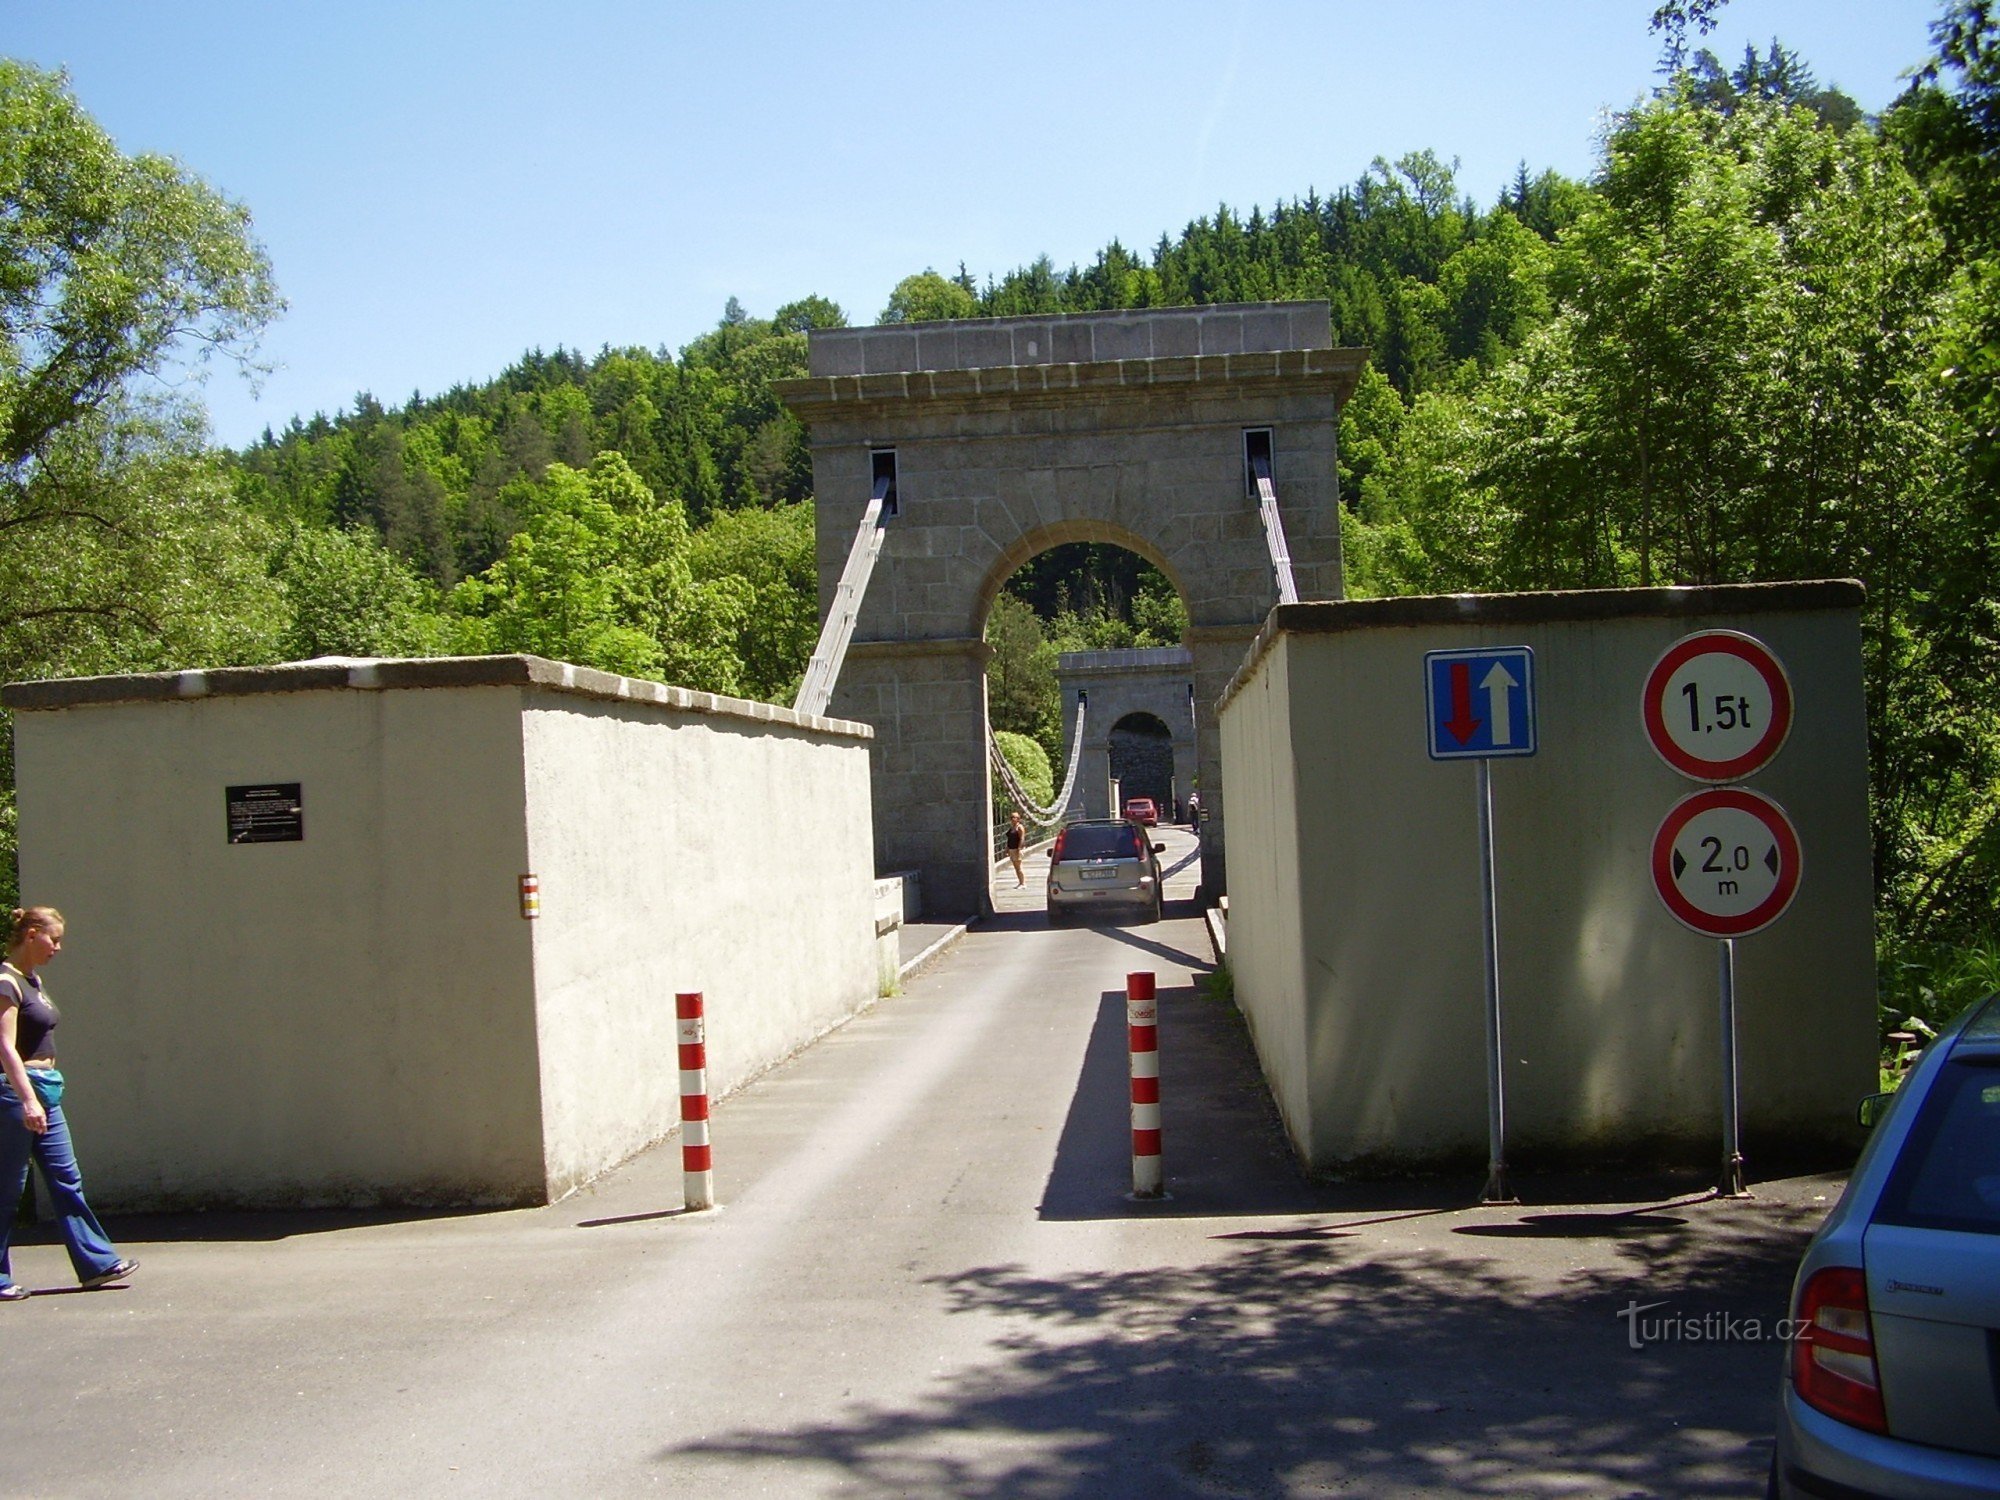 Chain bridge in Stádlec